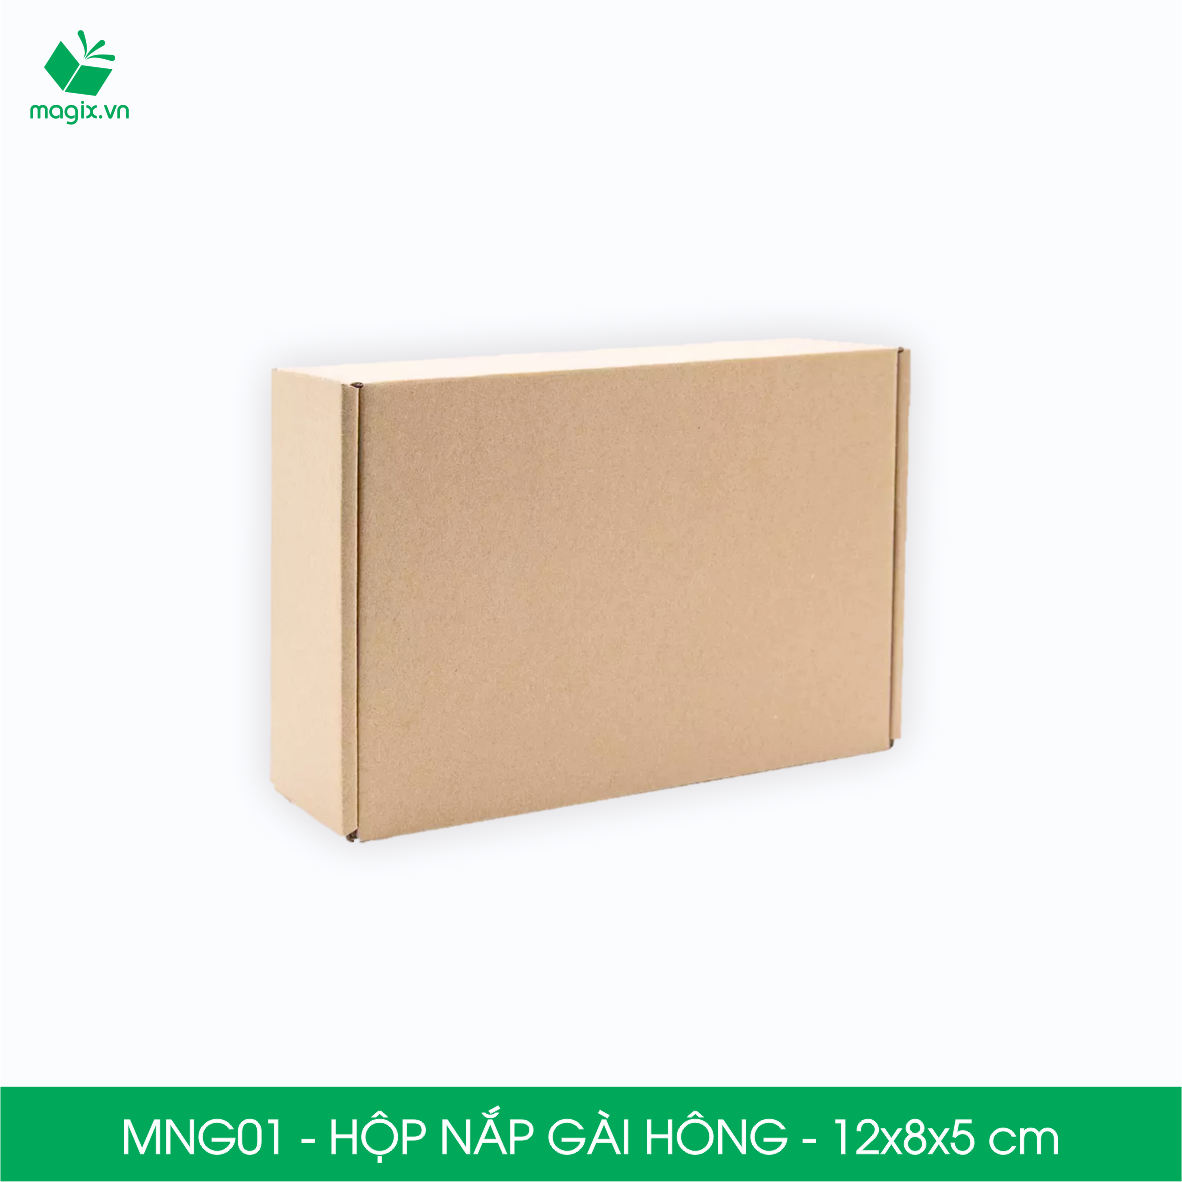 MNG01 - 12x8x5cm - Combo 60 hộp nắp gài hông - Thùng carton đóng hàng